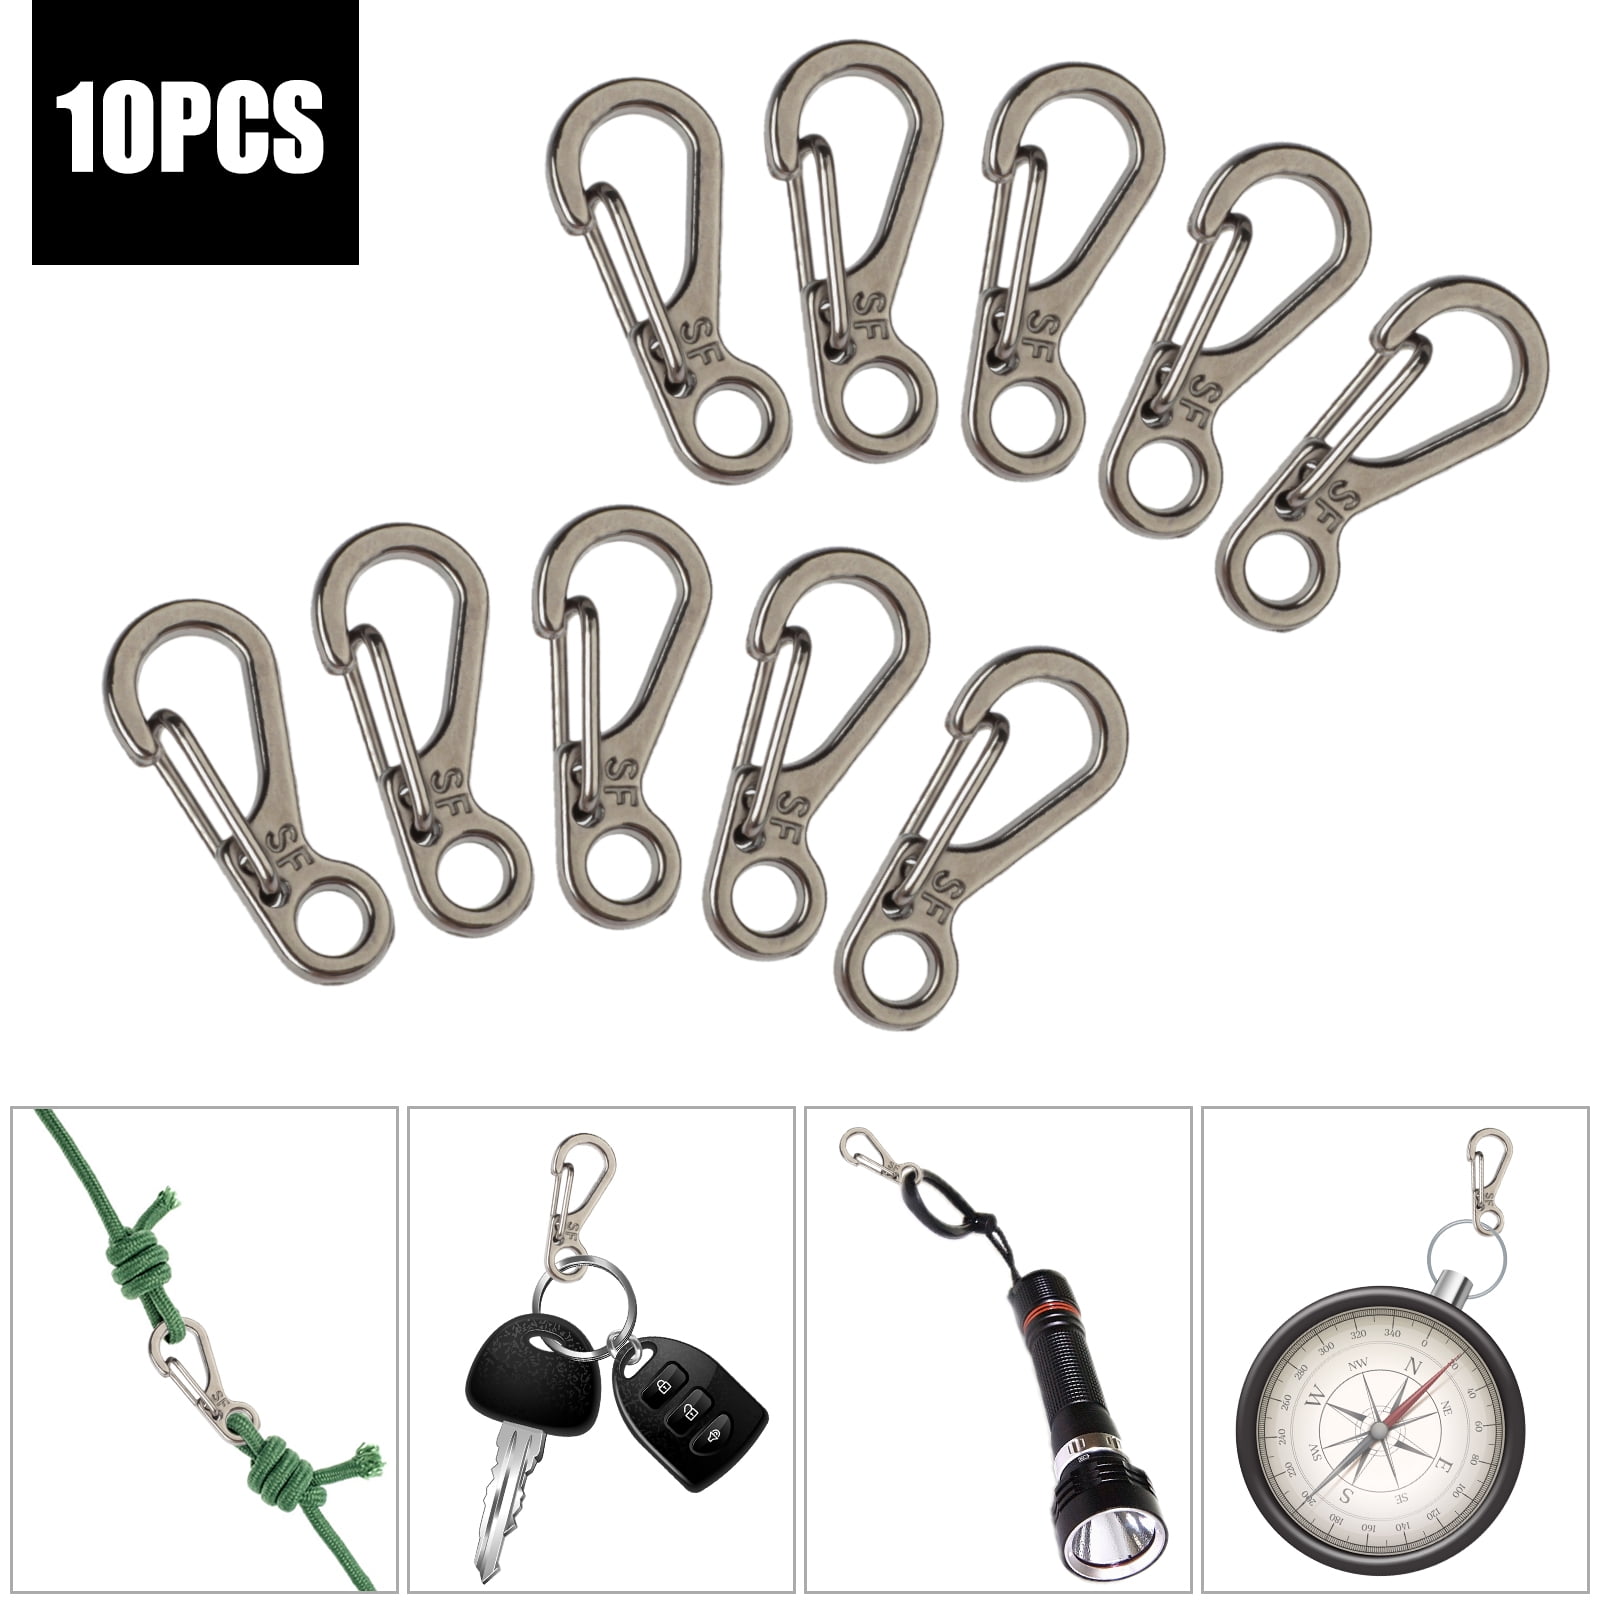 5pcs Mini Snap Spring Clip Hook Quick Link Carabiner Tool L4F5 Set Key I2H9 